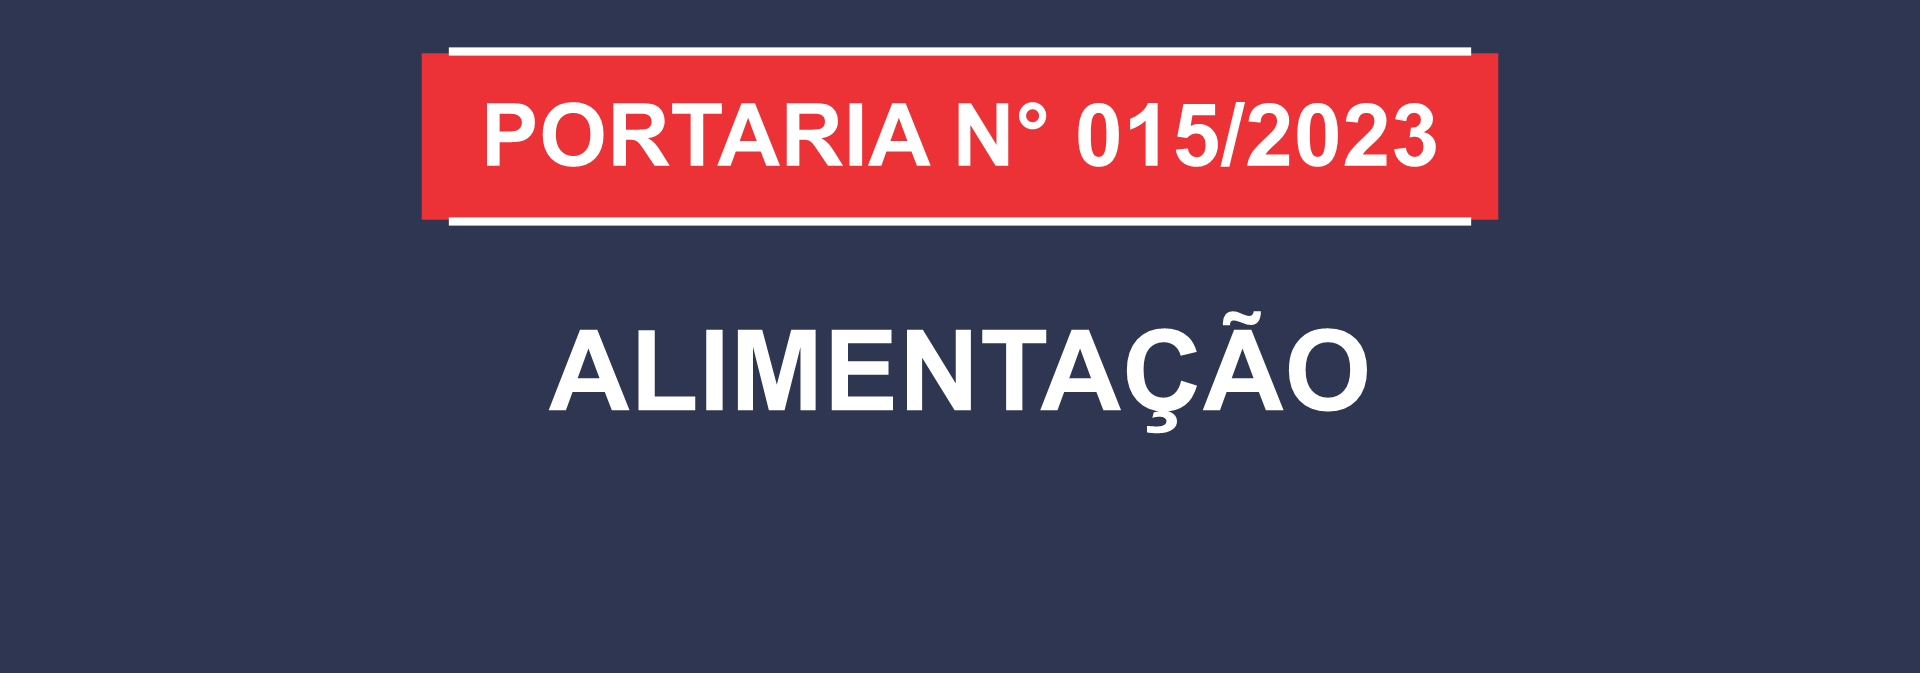 notícia: PORTARIA Nº 015/2023 - ALIMENTAÇÃO - GAB/SEDUC, DE 15 DE MARÇO DE 2023